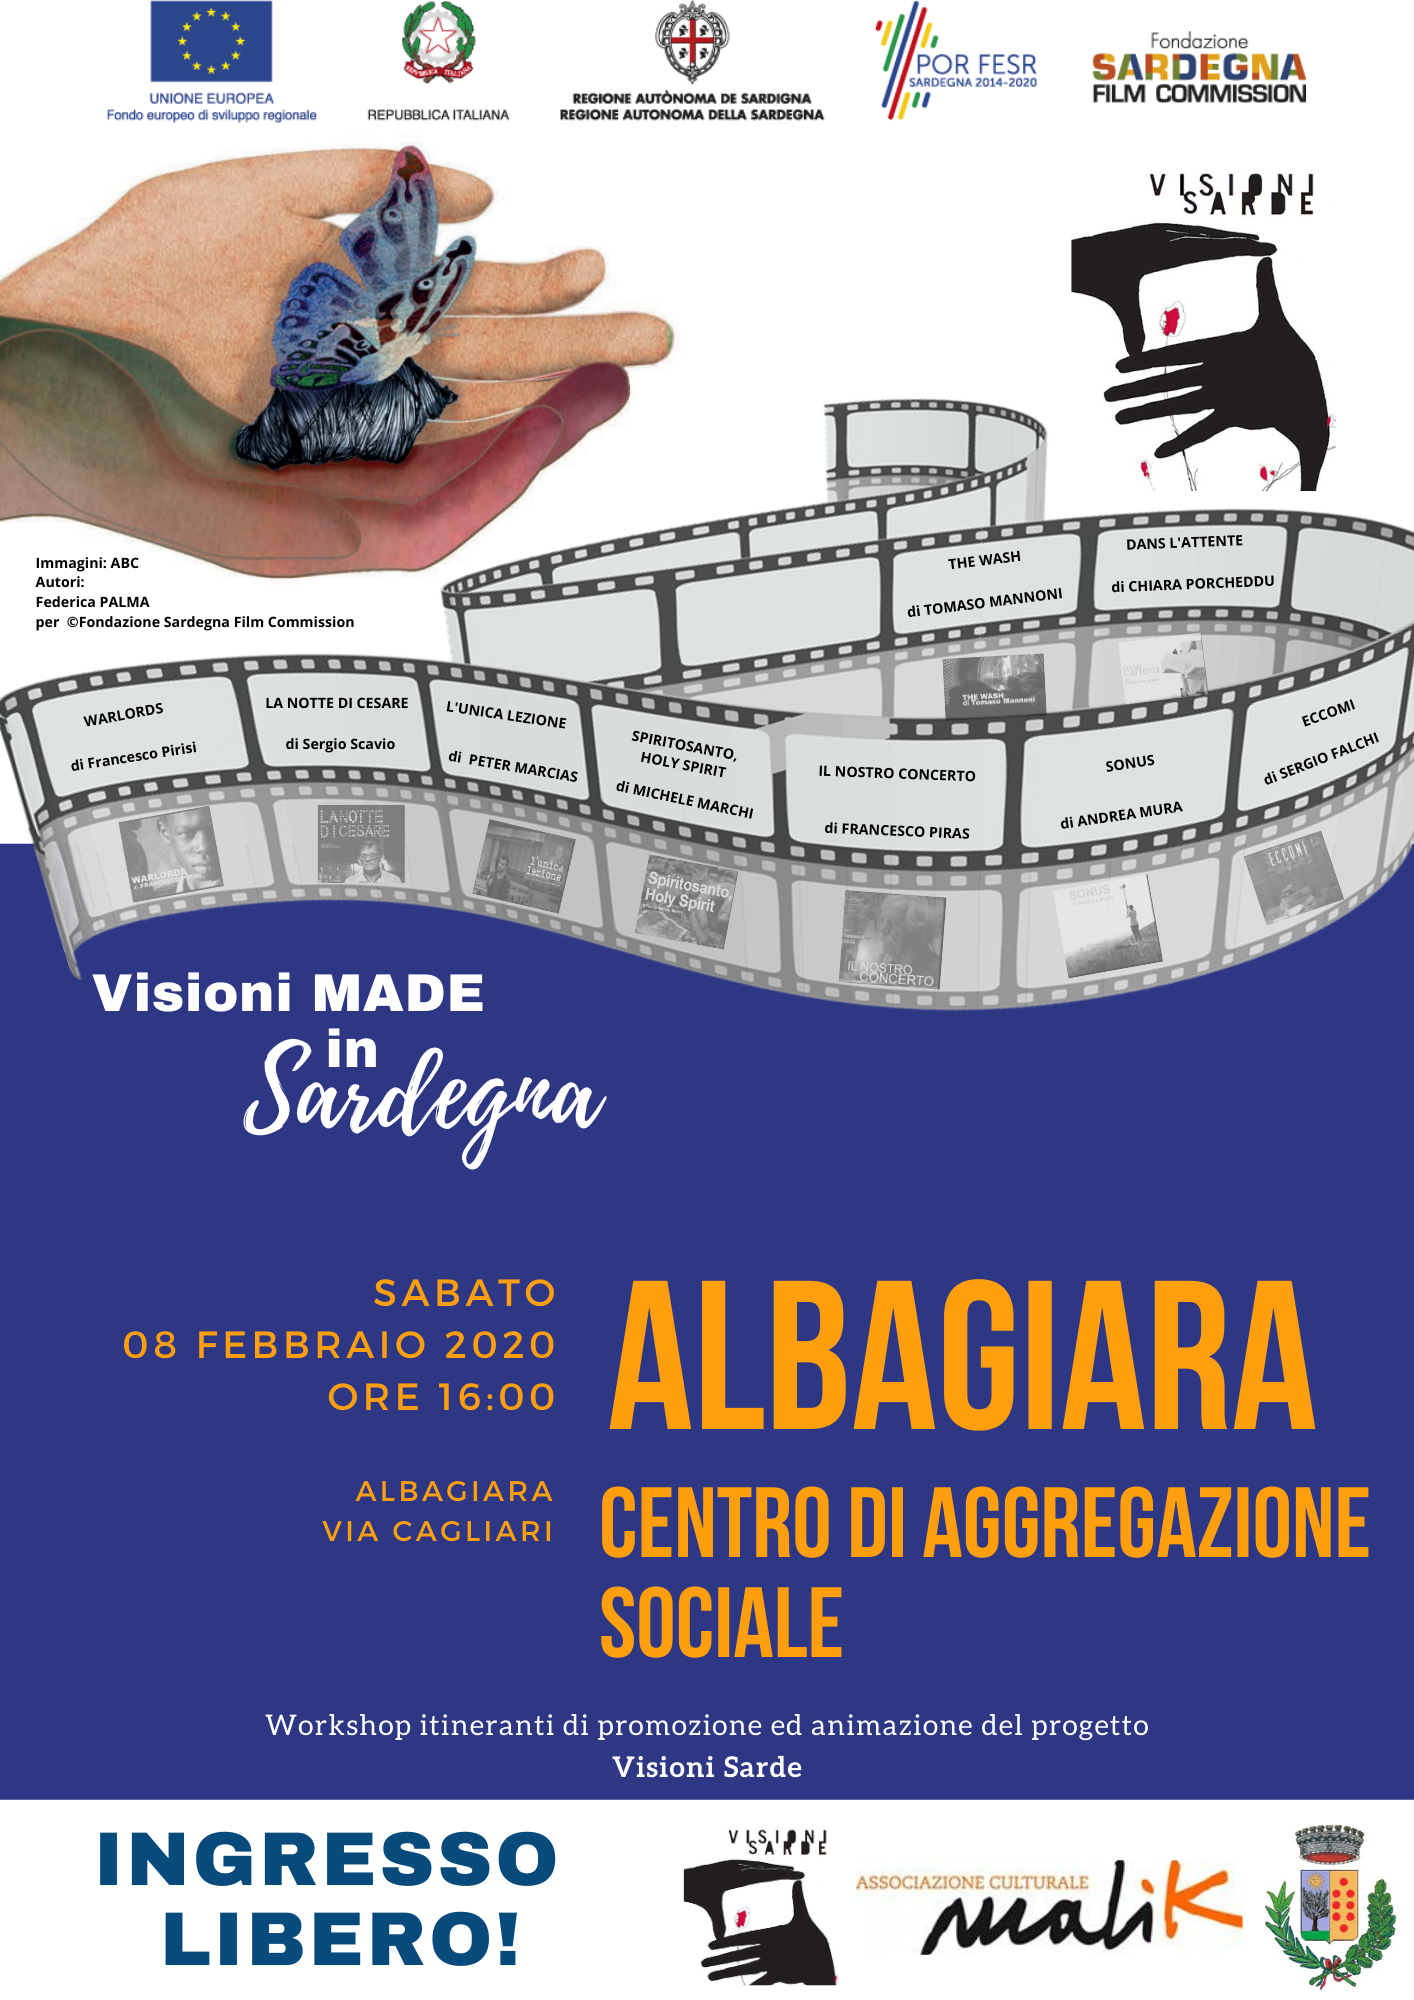 “Visioni made in Sardegna” ad Albagiara, l’8 febbraio proiezioni pubbliche presso il Centro di Aggregazione Sociale